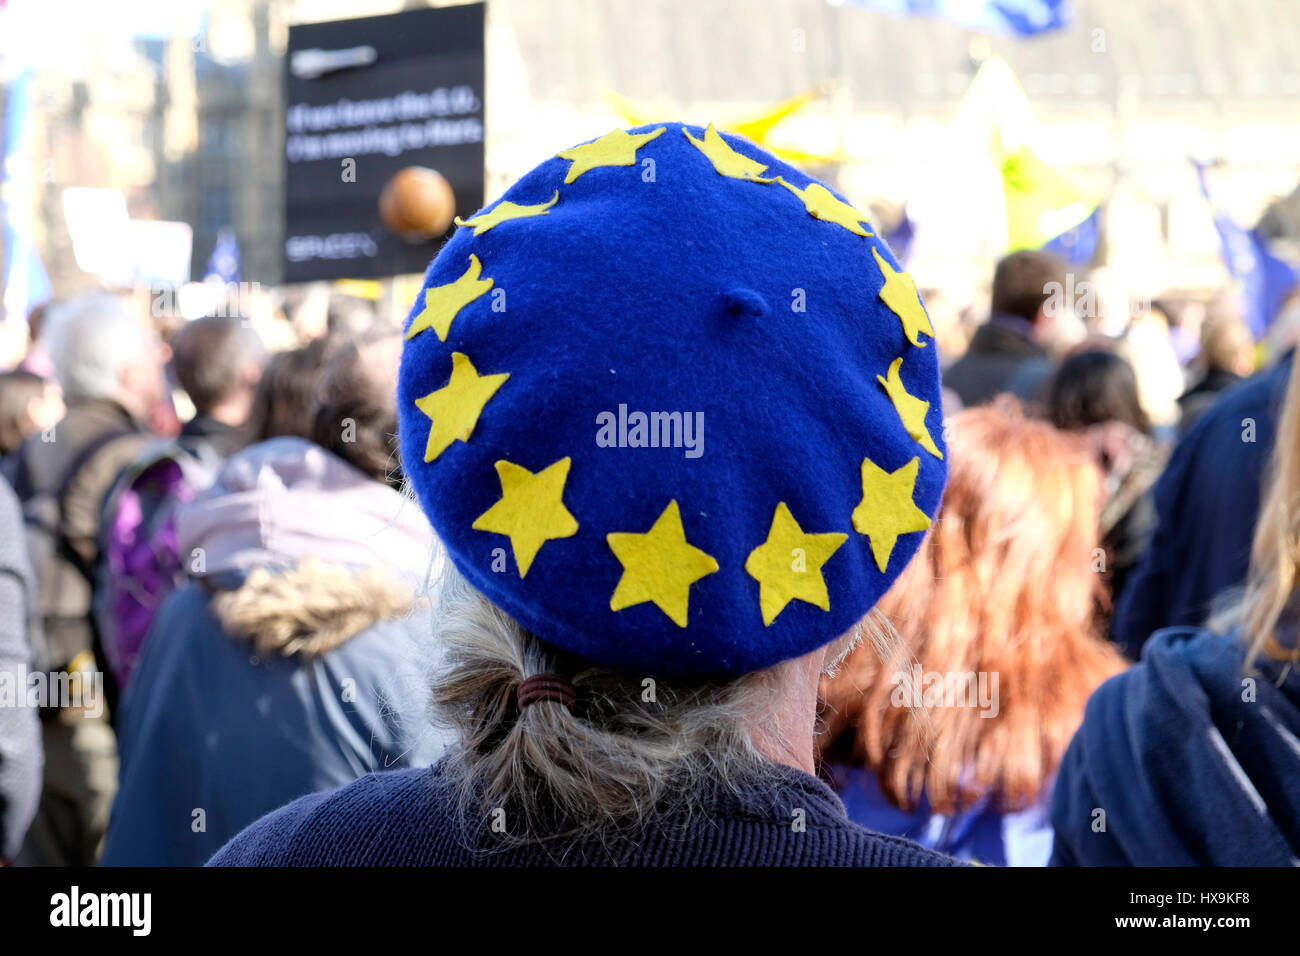 Vista trasera de un hombre vestido con una boina de la UE,durante una protesta contra la Brexit, Westminster, Londres. Foto de stock